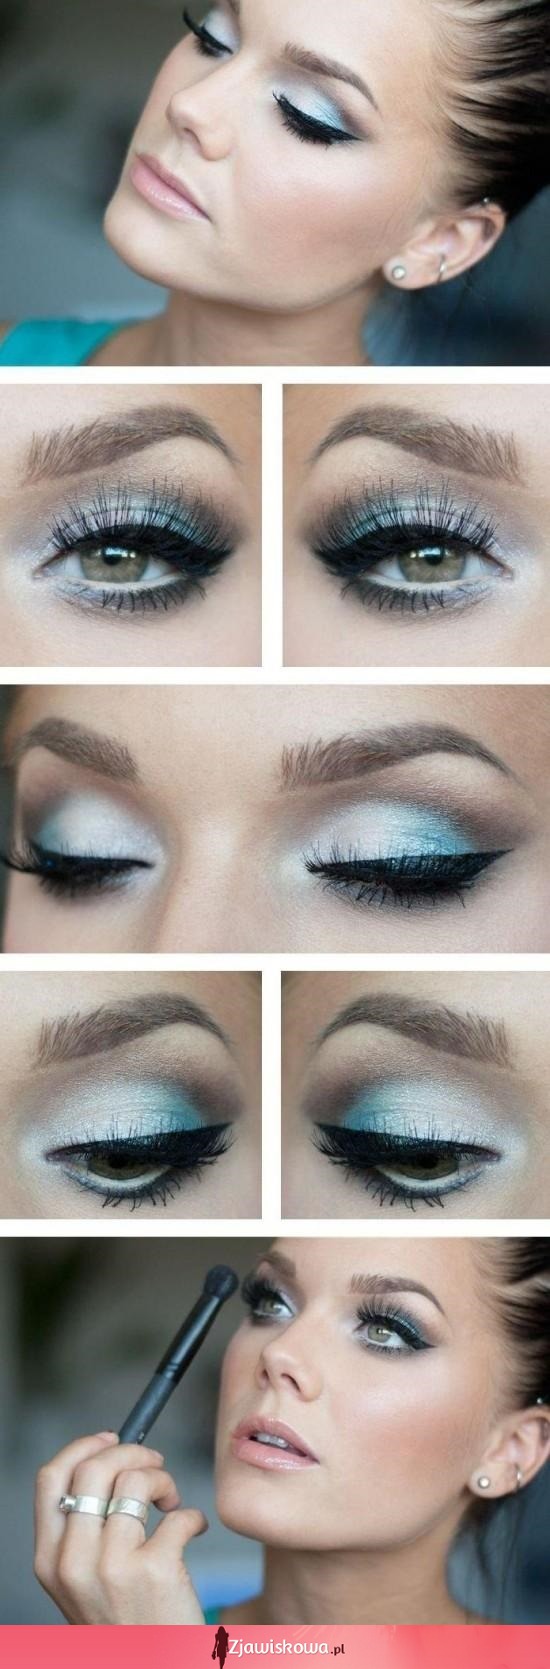 Błękitny makeup